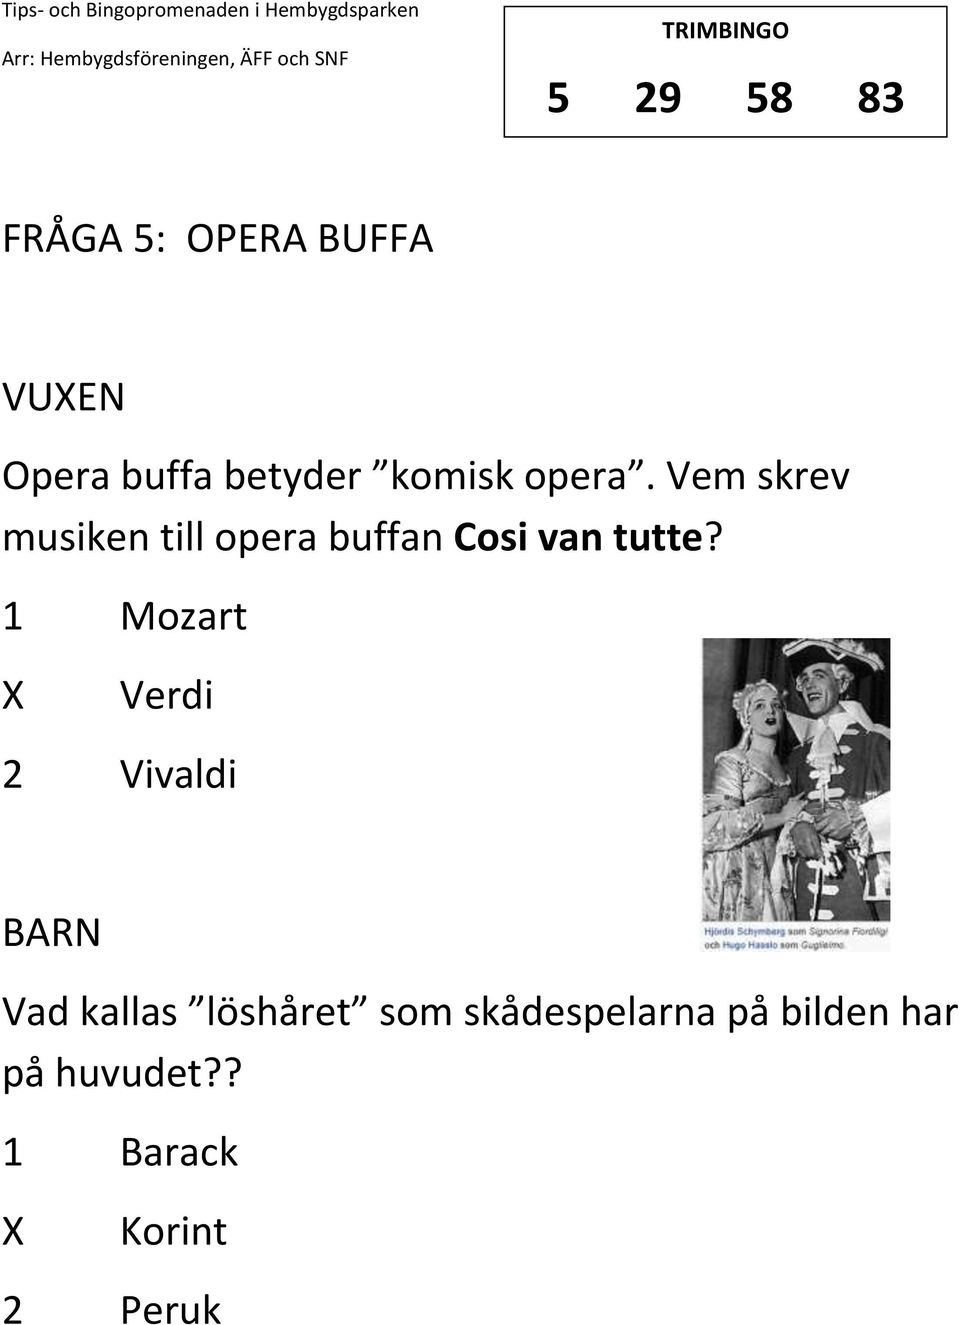 Vem skrev musiken till opera buffan Cosi van tutte?